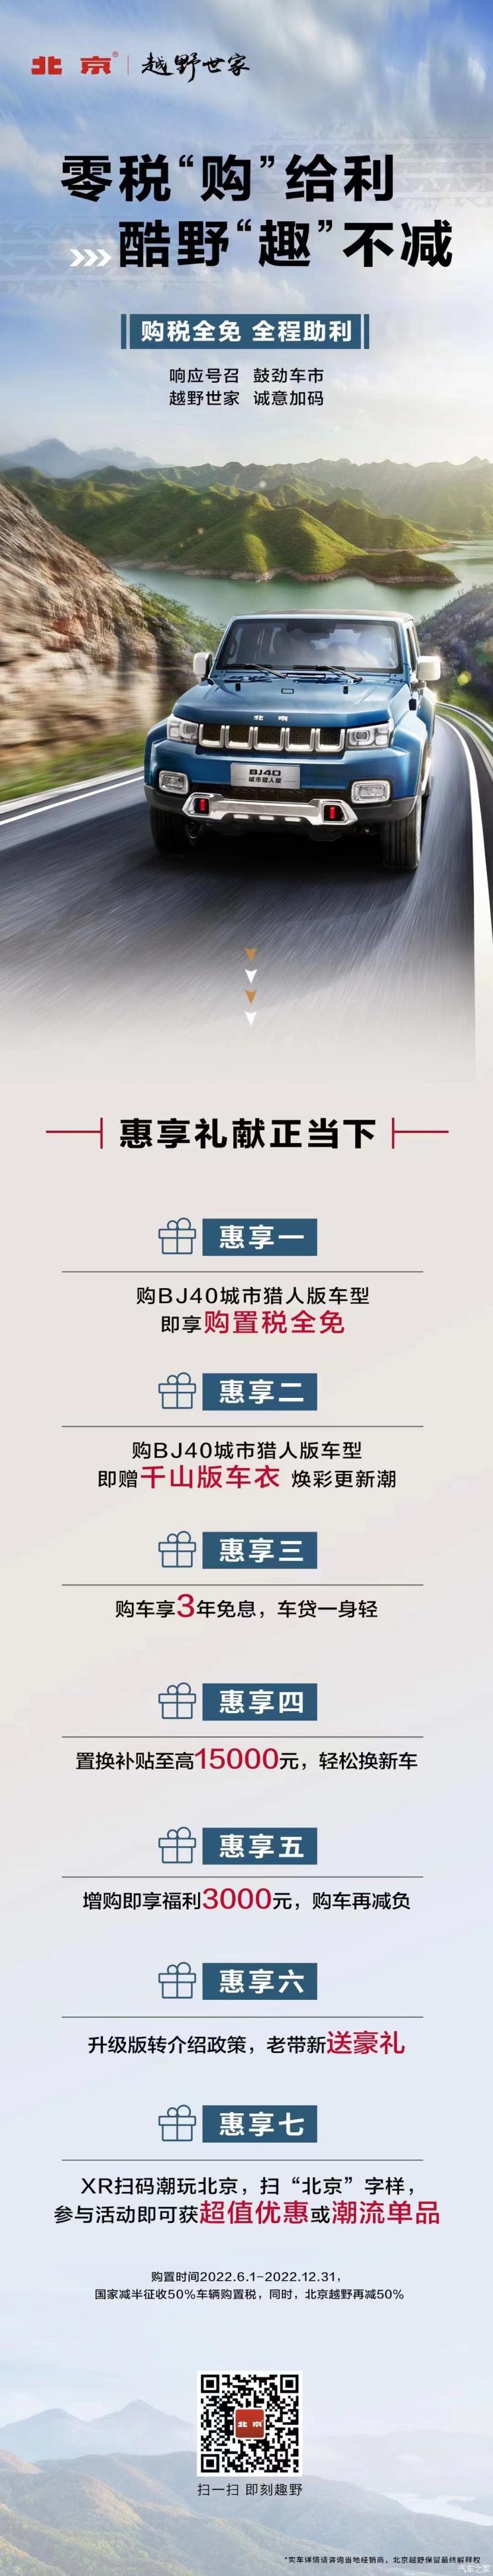 北京BJ40城市猎人版推出购置税全免活动